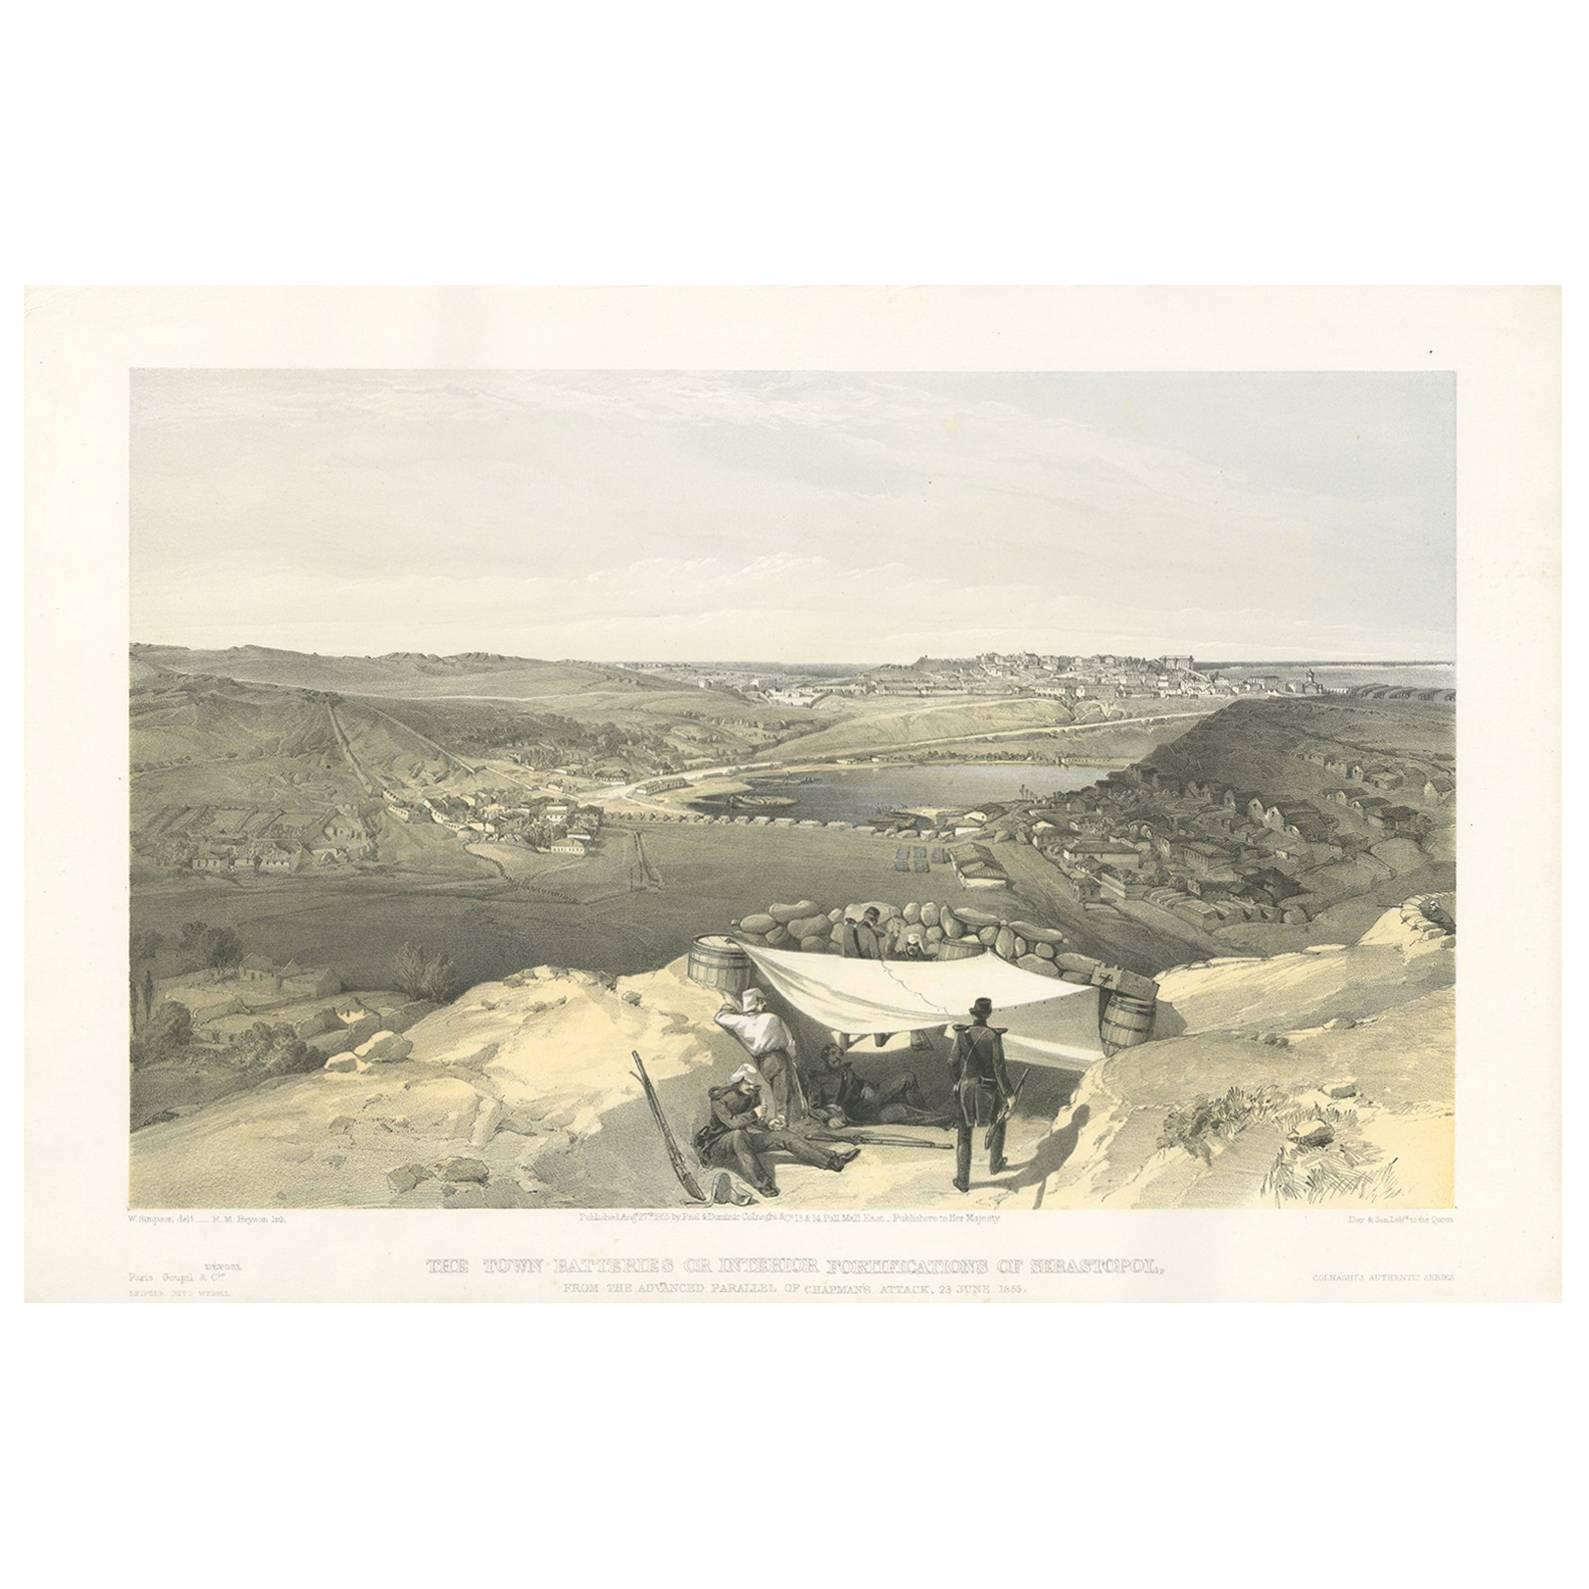 Impression ancienne avec une vue de la guerre de Sébastien de Sebastopol par W. Simpson, 1855